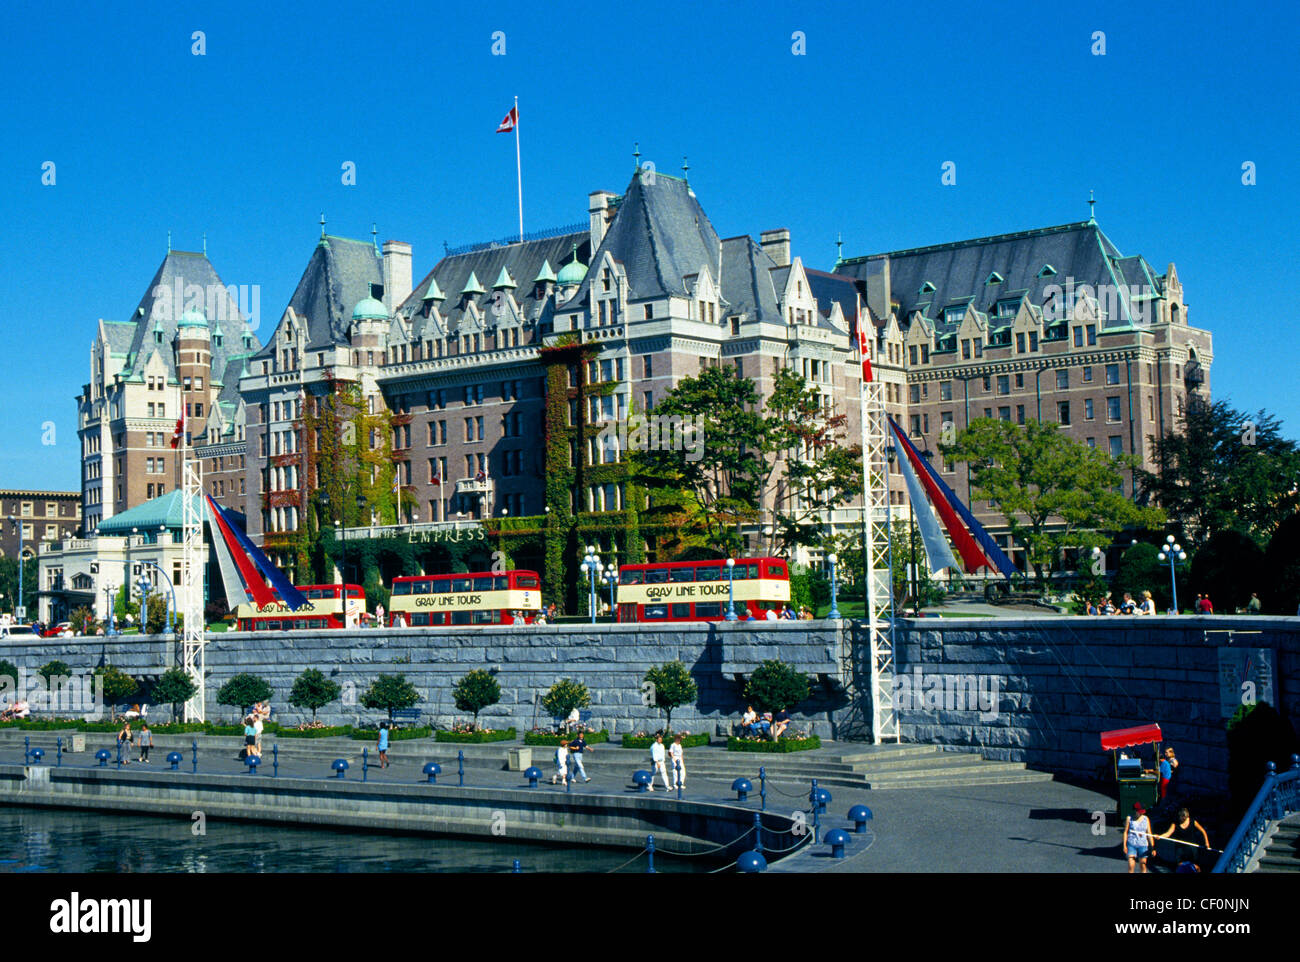 Doppeldecker-Reisebusse Line-up vor dem regal Empress Hotel, ein Wahrzeichen seit 1908 auf Vancouver Island in Victoria, British Columbia, Kanada. Stockfoto